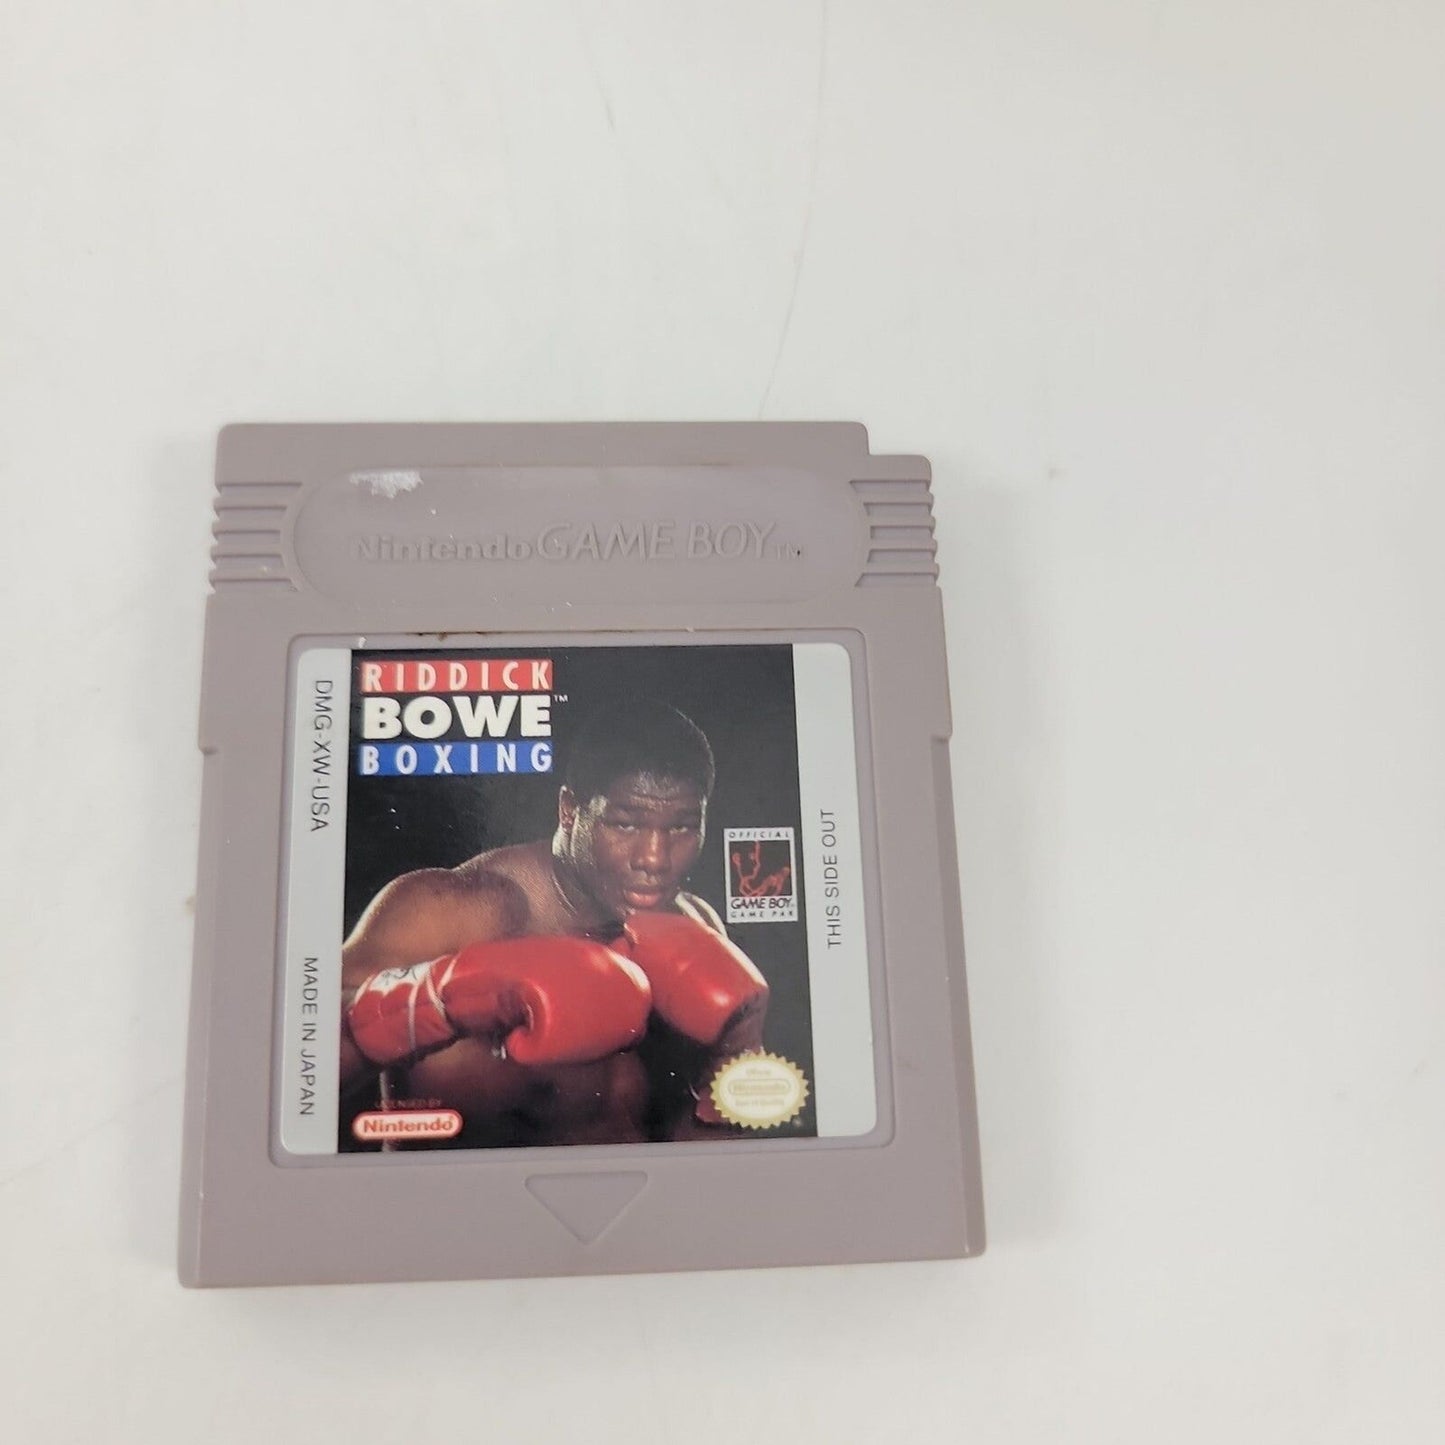 Riddick Bowe Boxing Game Boy Game